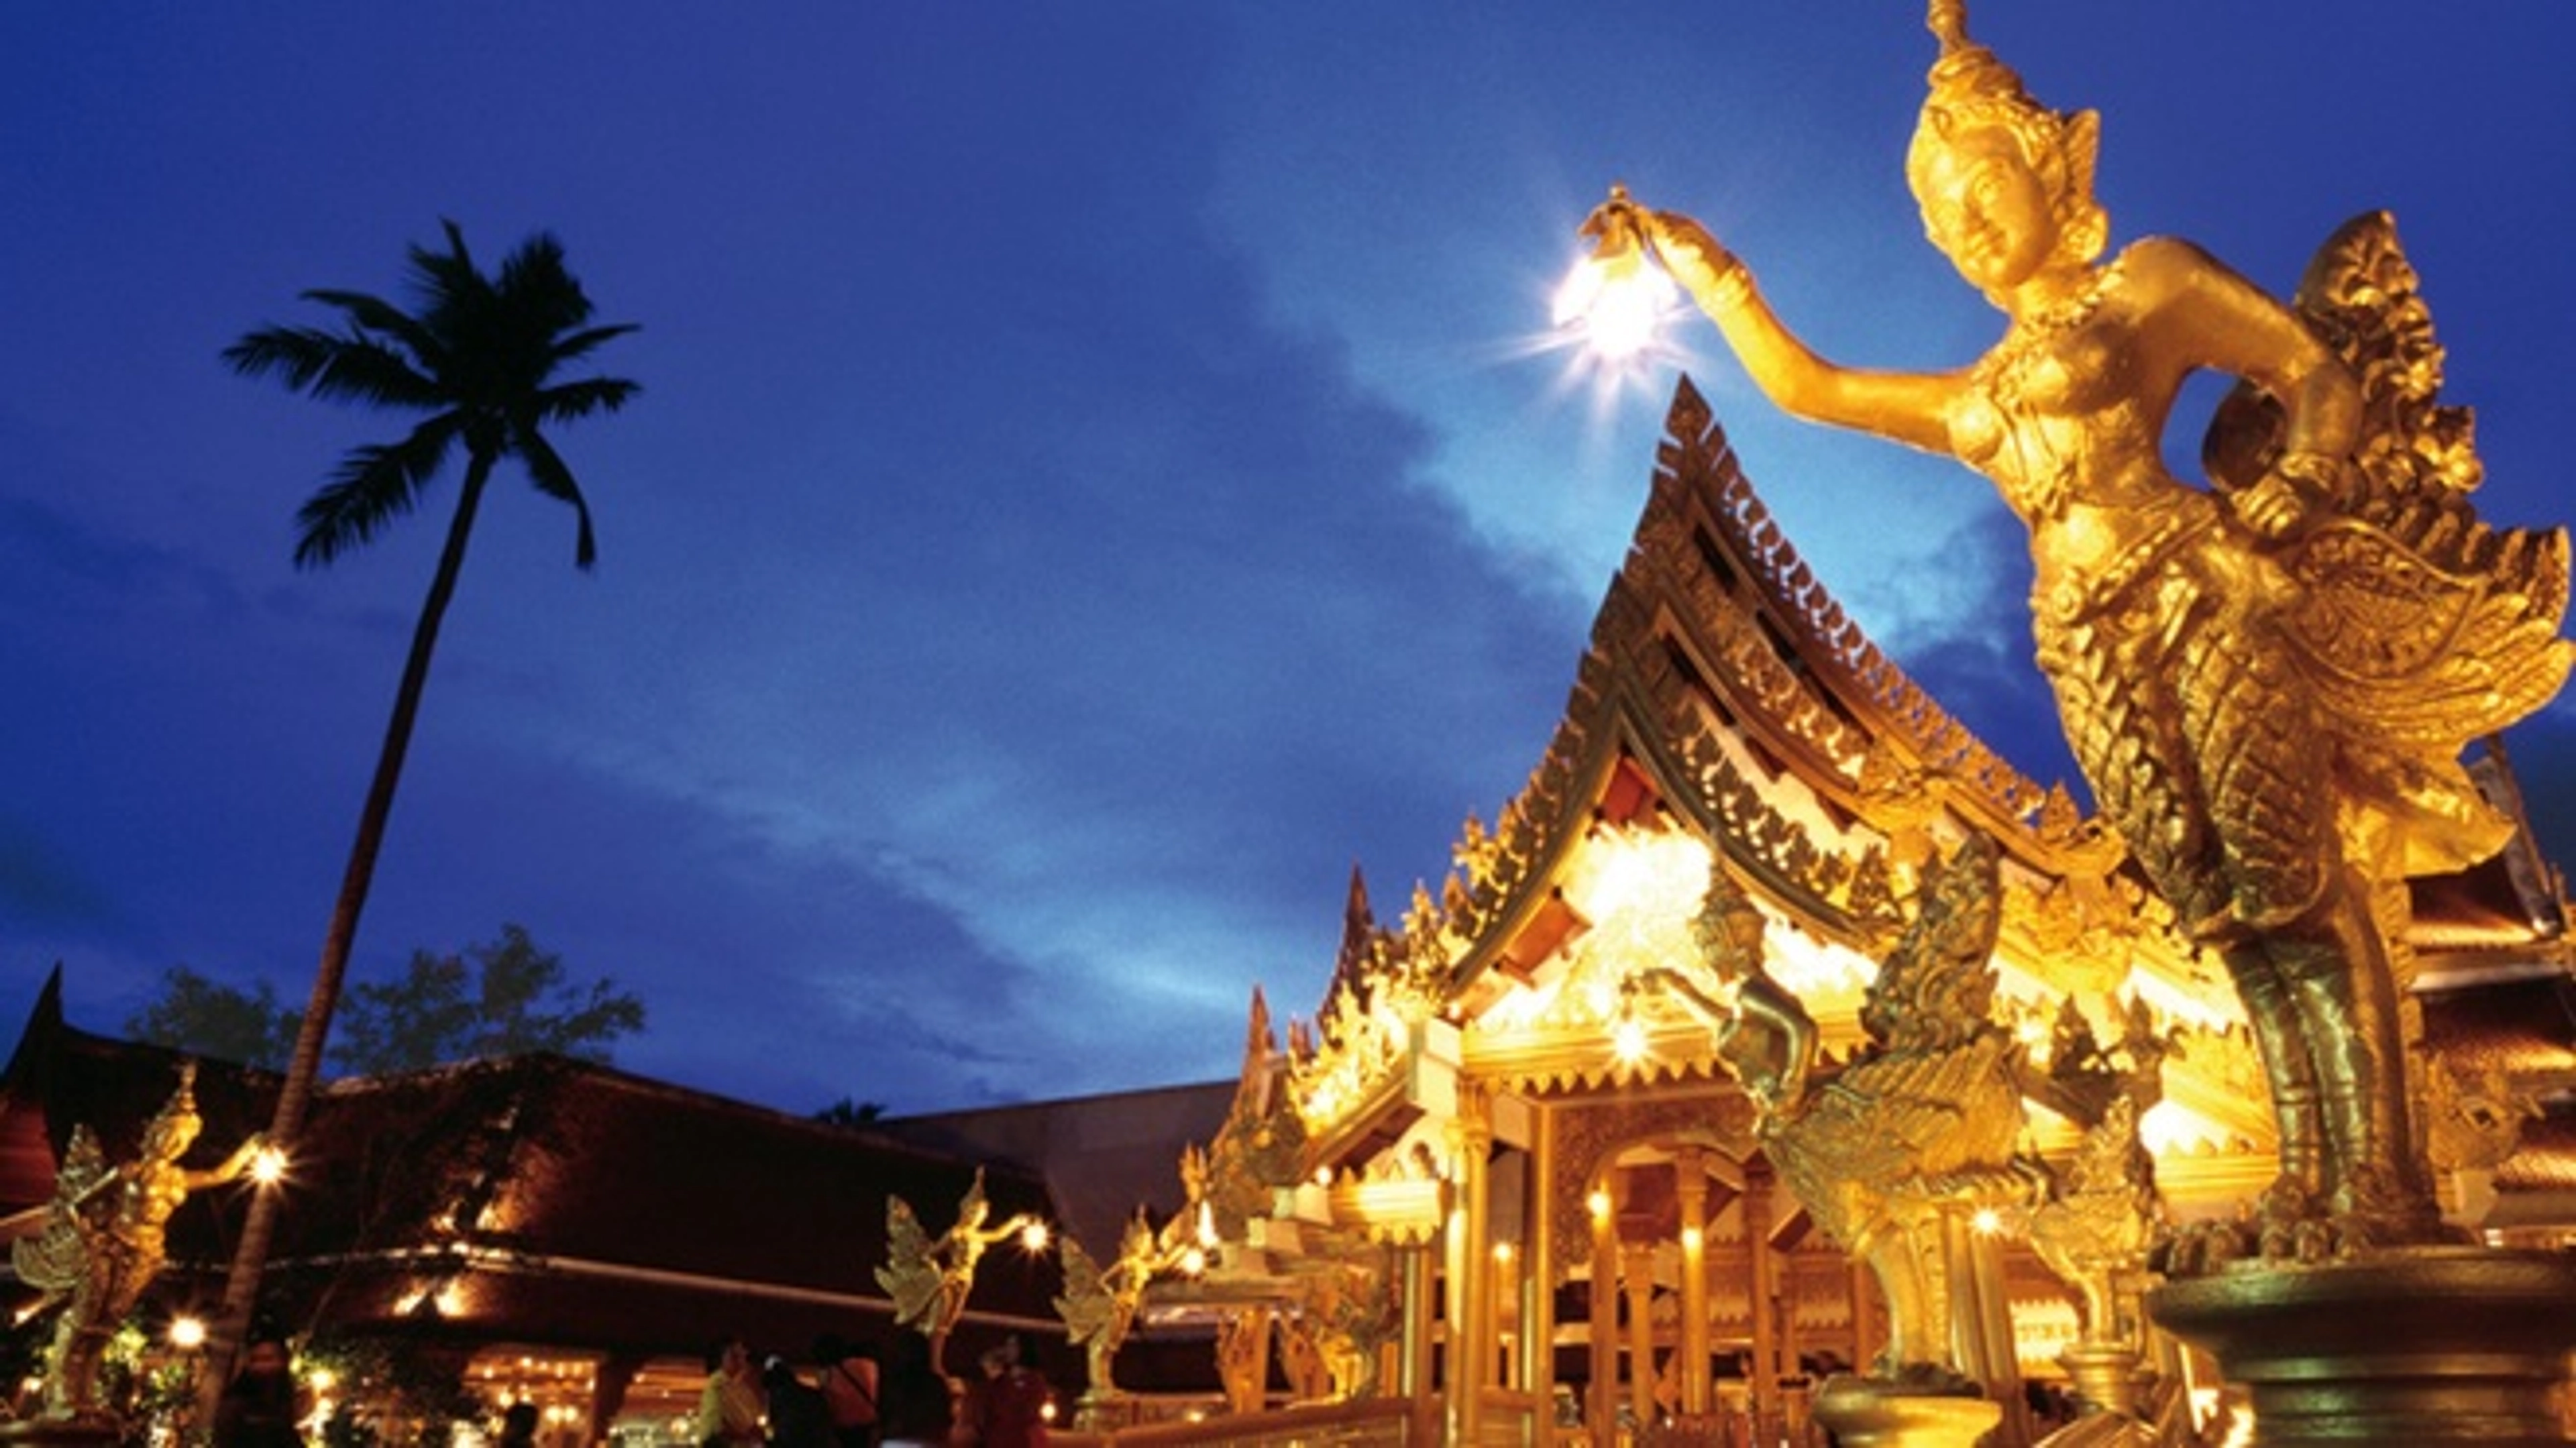 Sangtham Shrine - một trong những đền thờ tôn giáo đặc biệt tại Phuket, Thái Lan